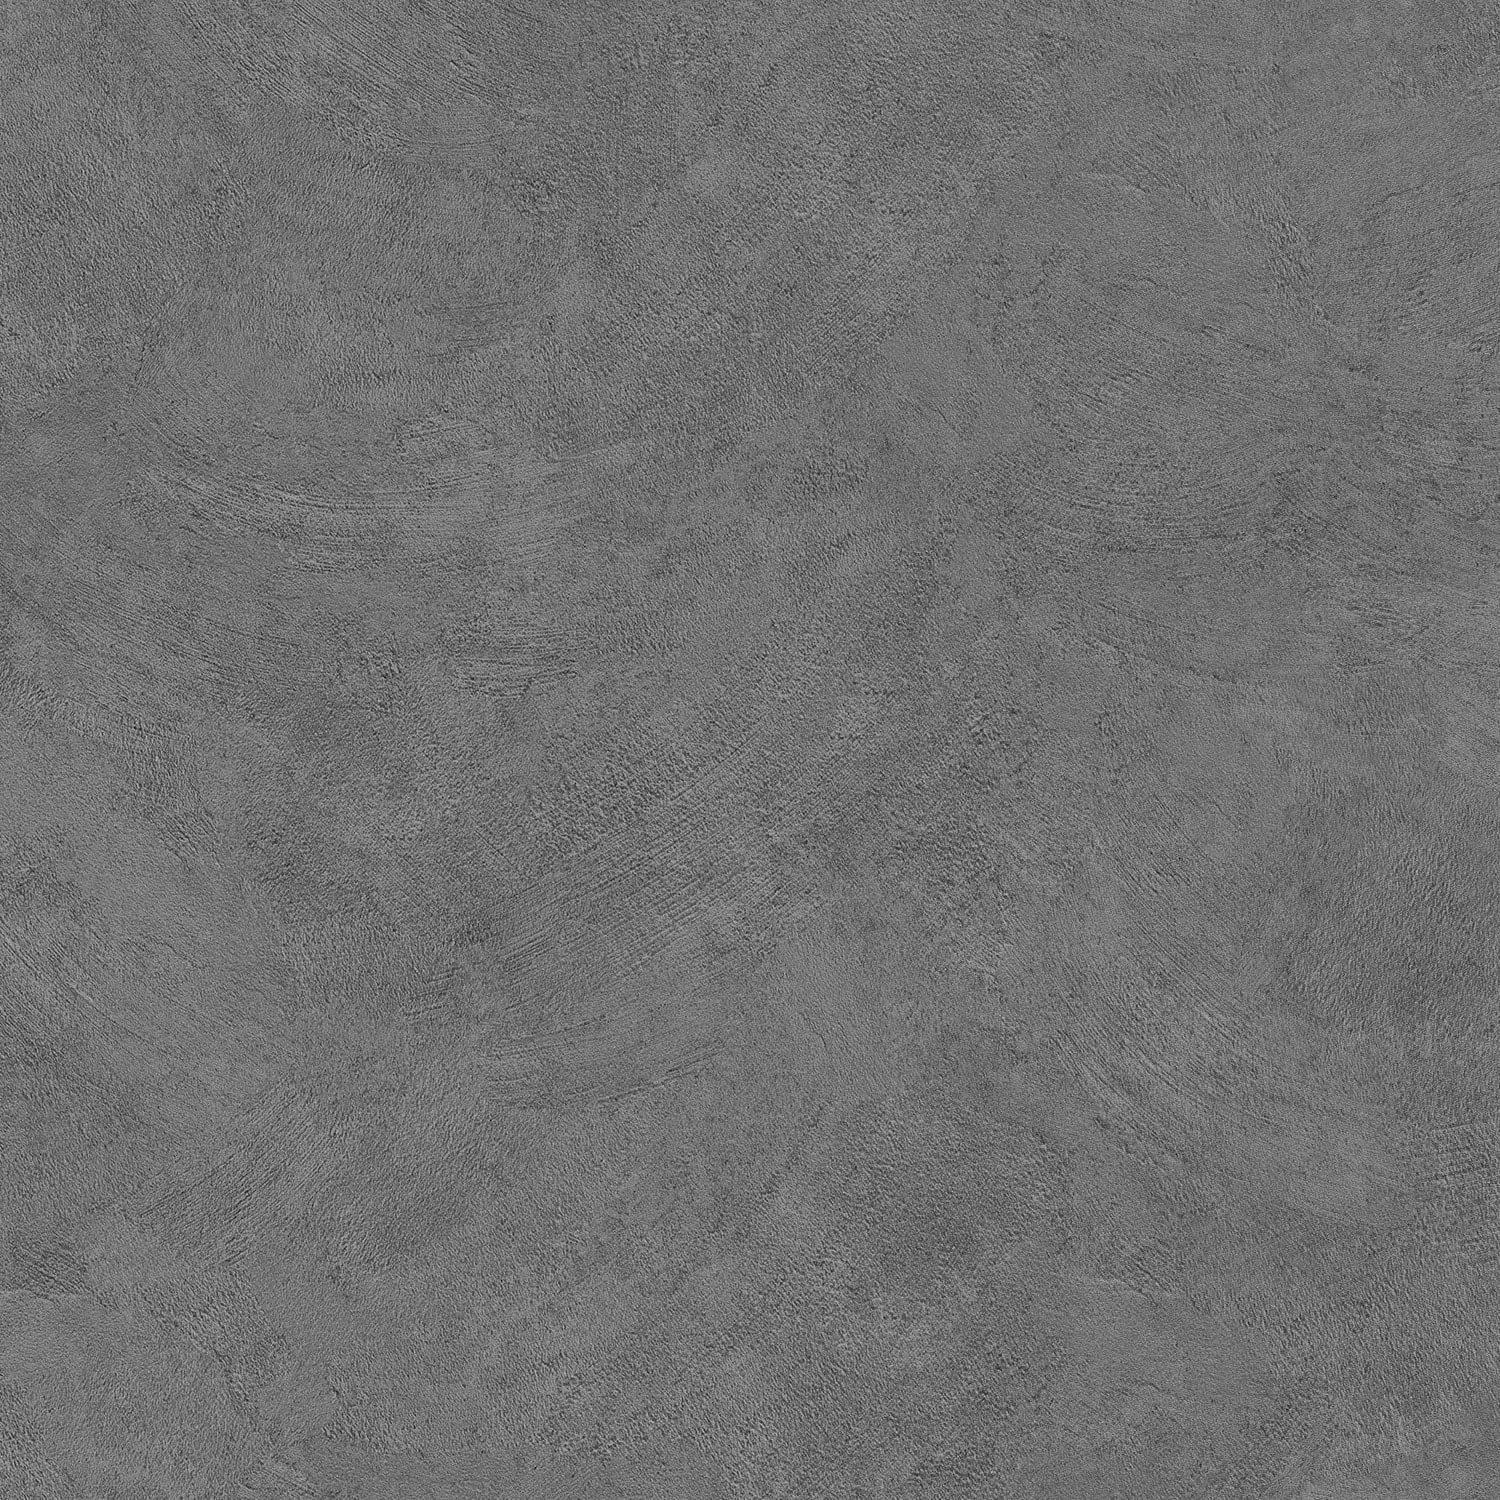 Adhésif-décoratif-texturé-Enduit-béton-gris-foncé-deco o rouleau